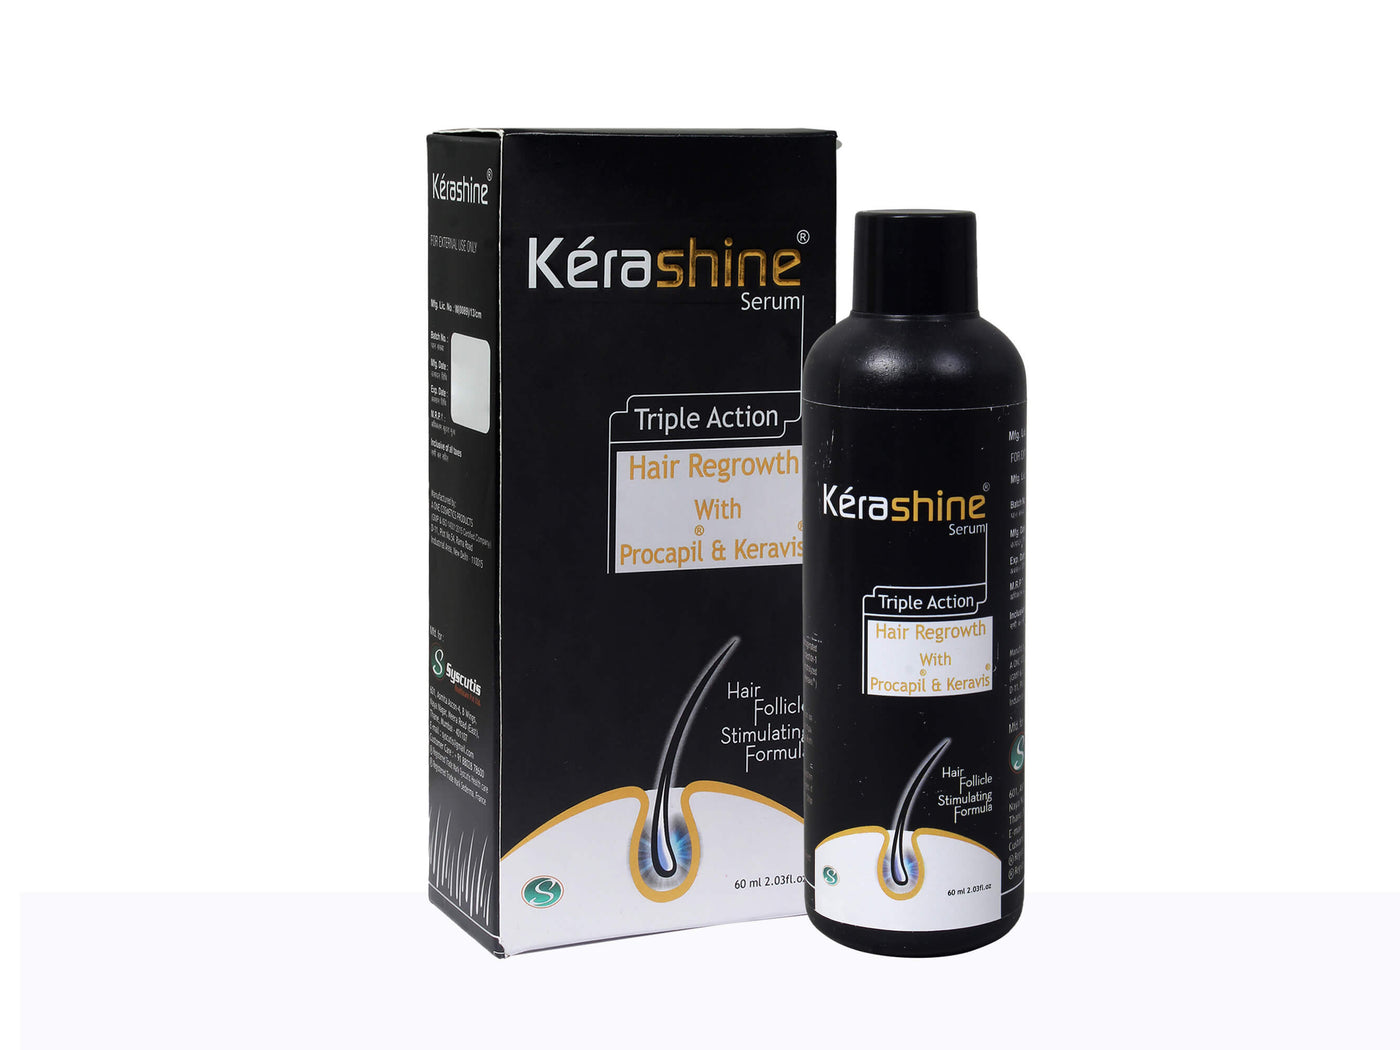 Kerashine Serum - Clinikally